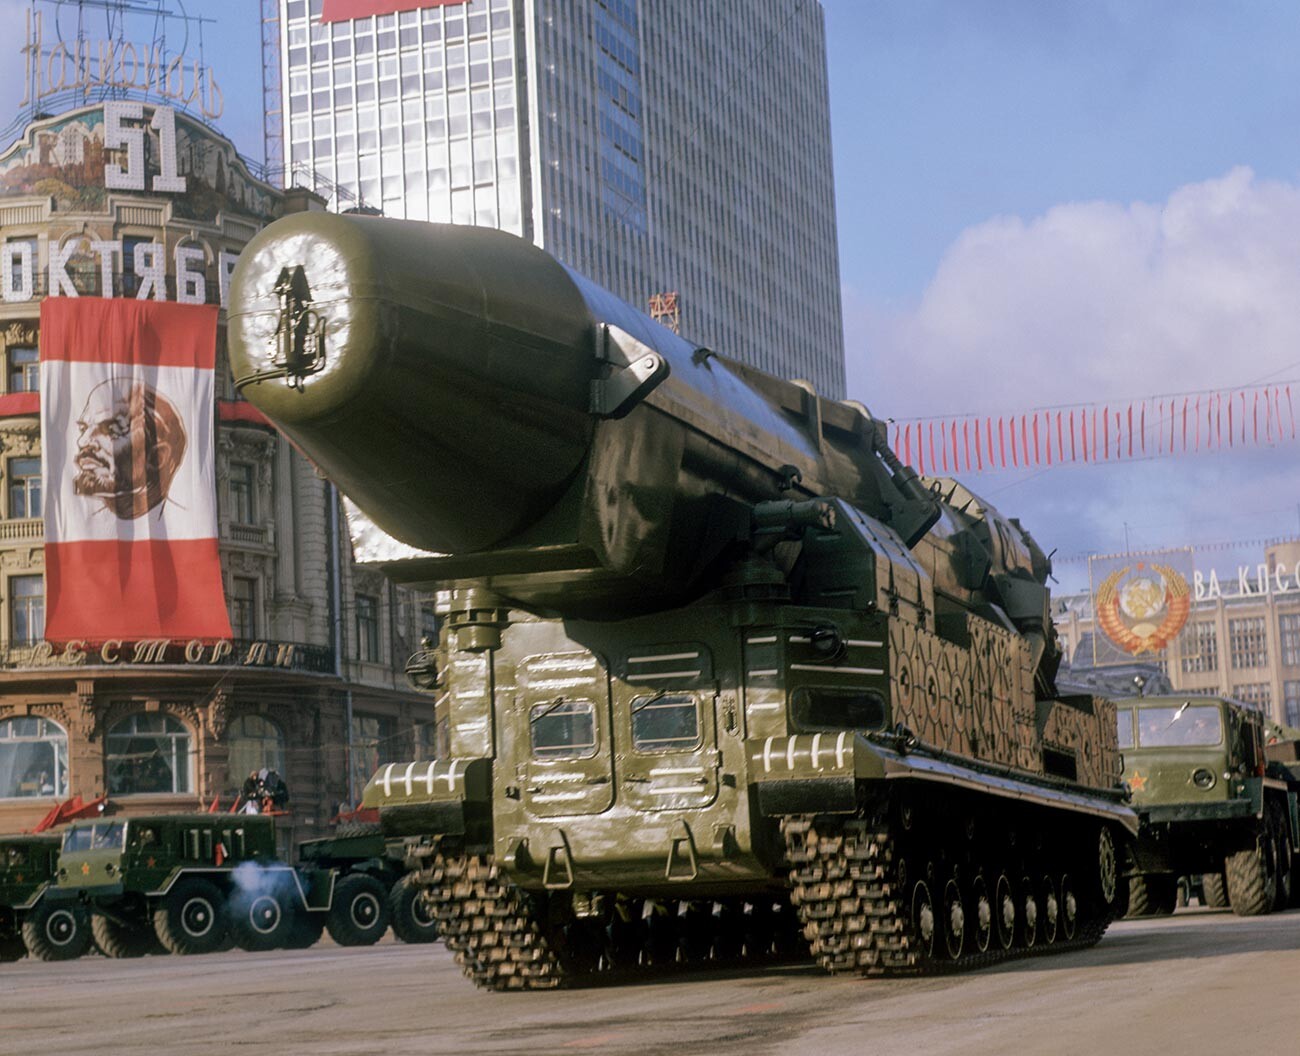 Des missiles balistiques avant le défilé militaire en l'honneur du 51e anniversaire de la Grande Révolution socialiste d'Octobre